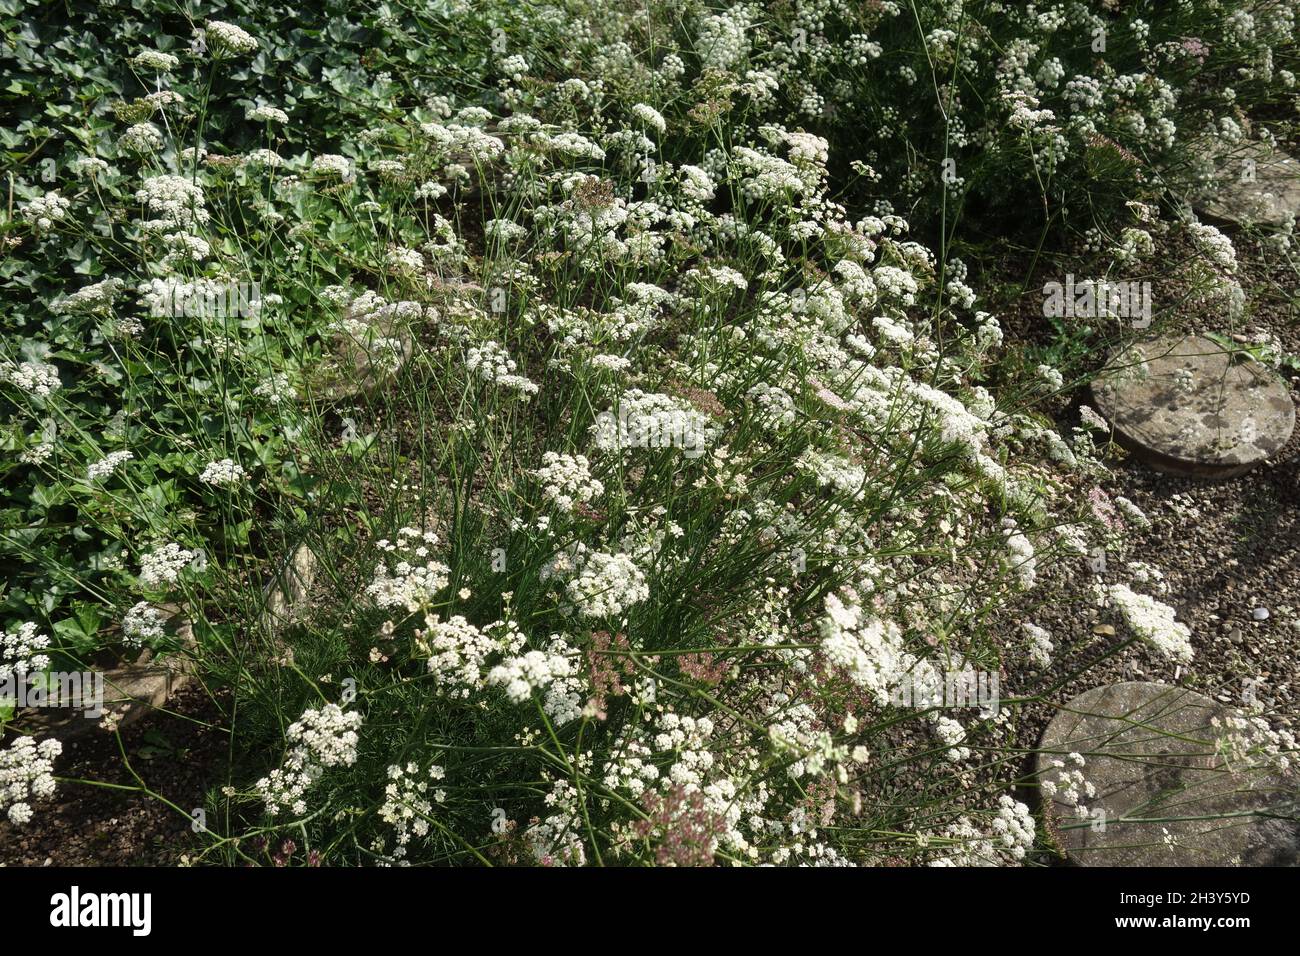 Seseli montanum, stone parsley Stock Photo